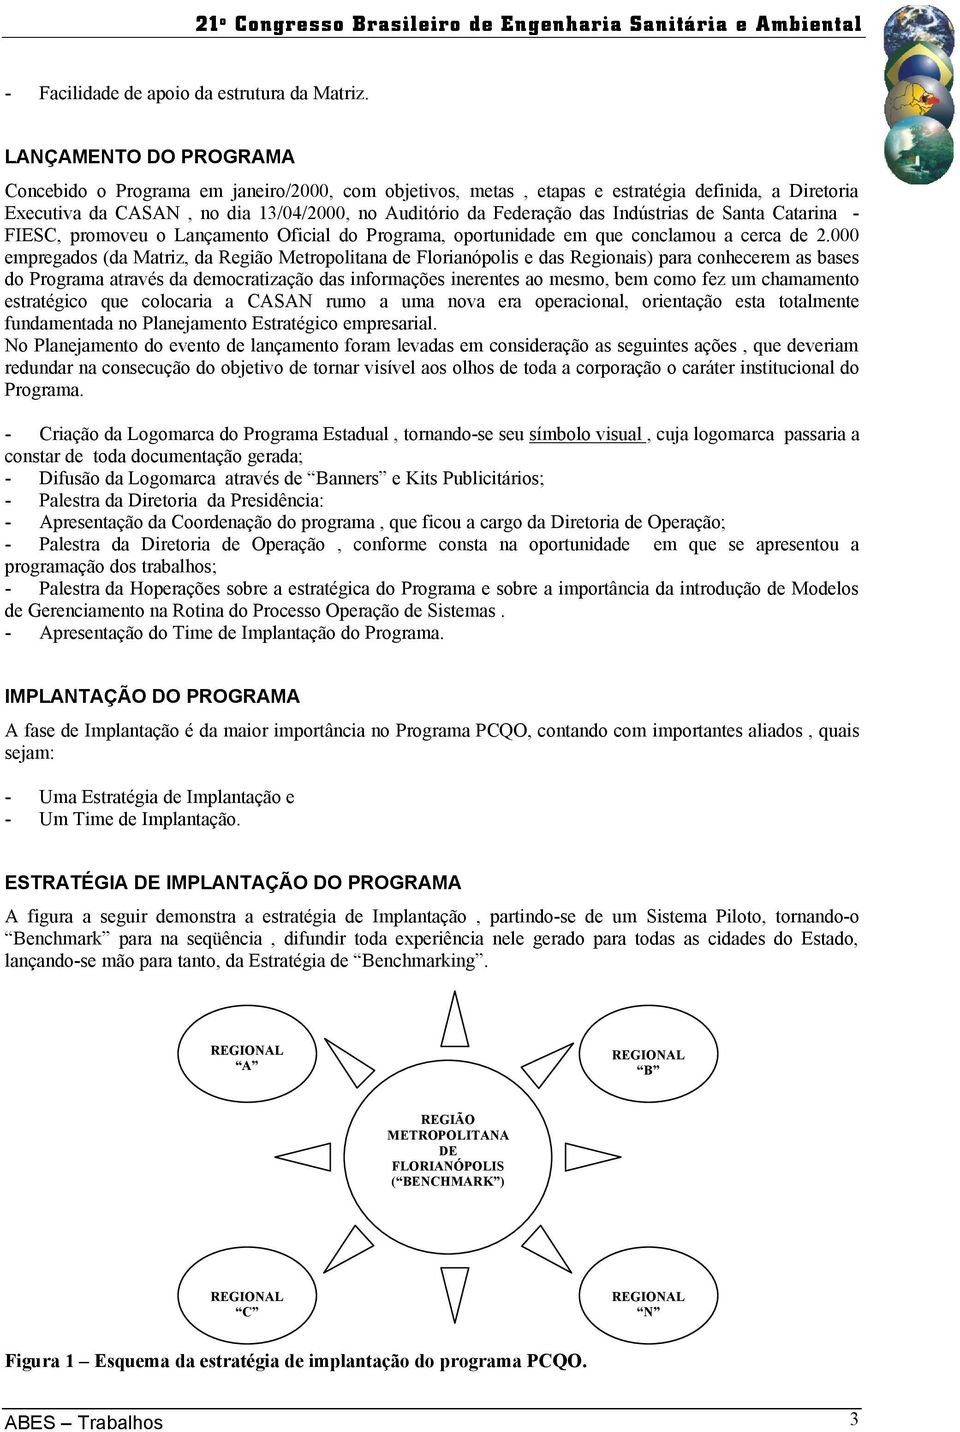 Indústrias de Santa Catarina - FIESC, promoveu o Lançamento Oficial do Programa, oportunidade em que conclamou a cerca de 2.